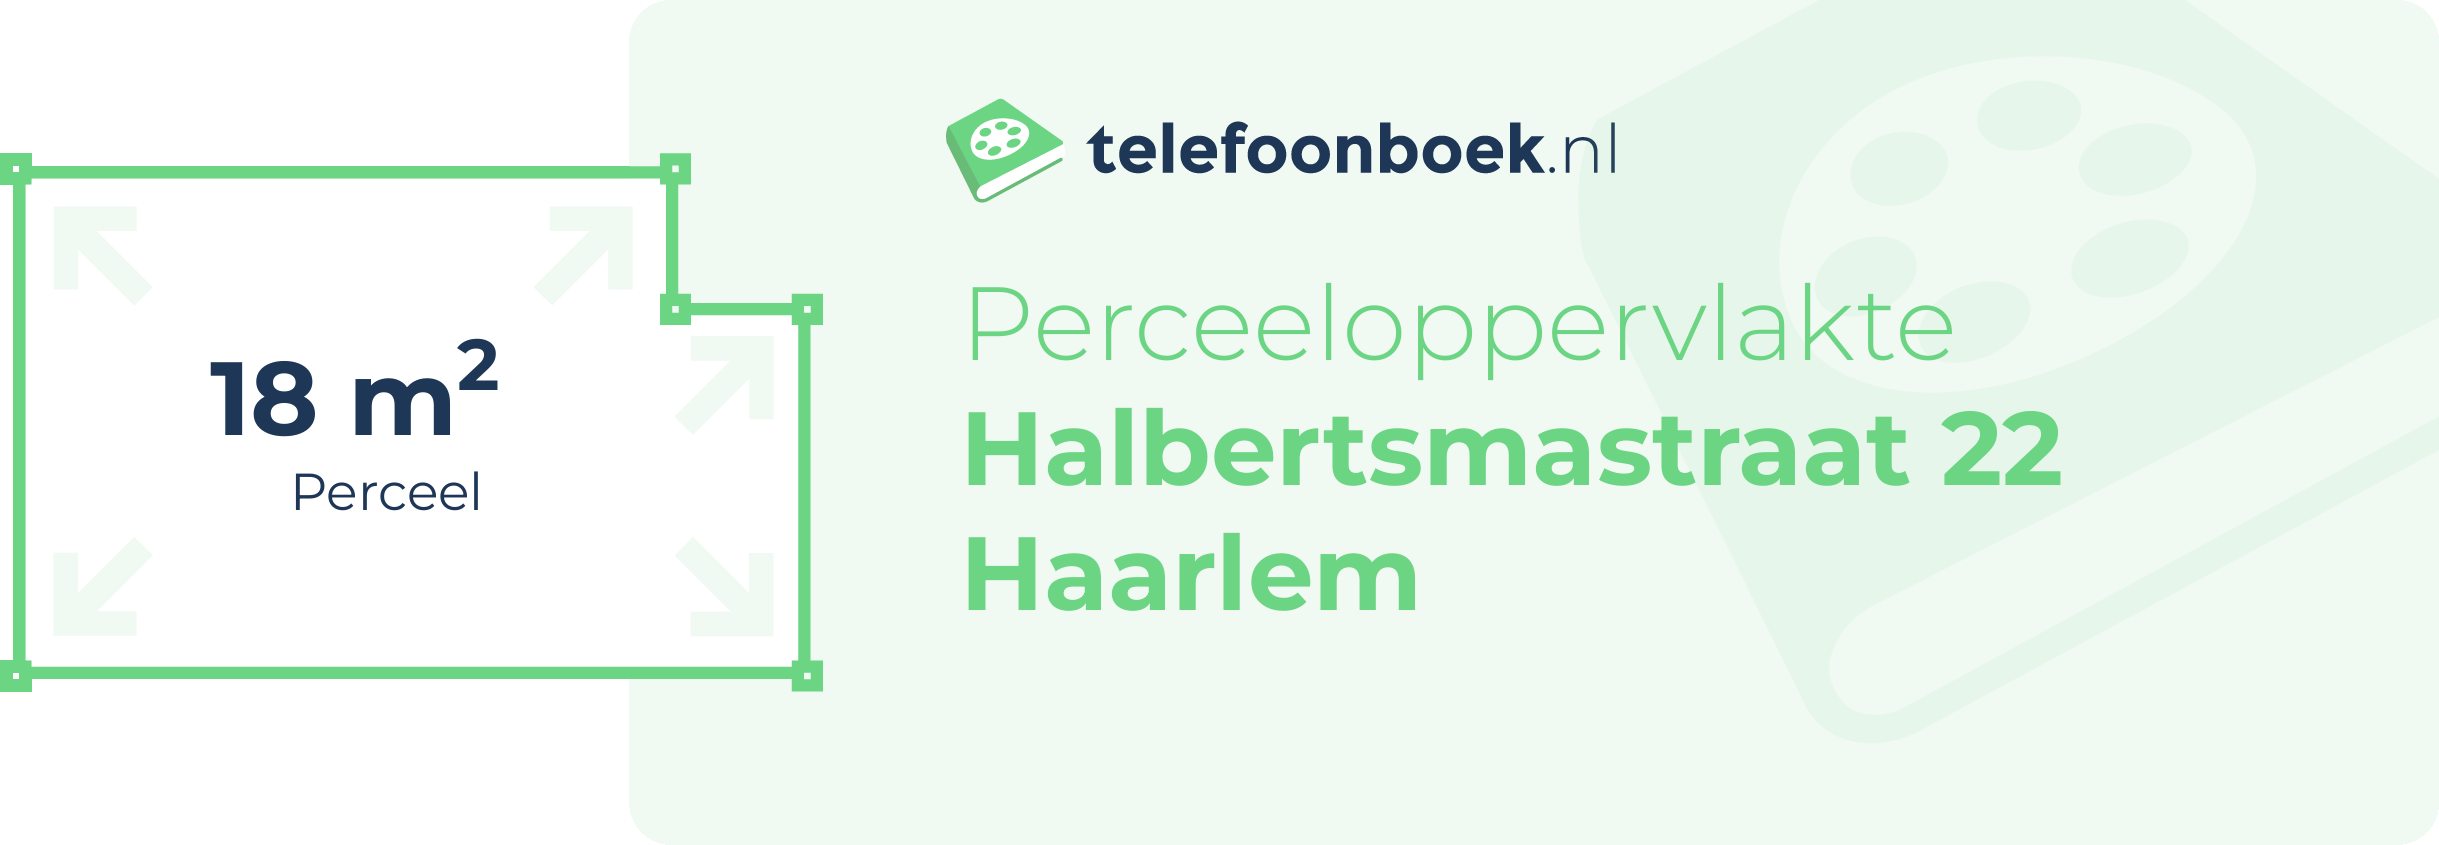 Perceeloppervlakte Halbertsmastraat 22 Haarlem